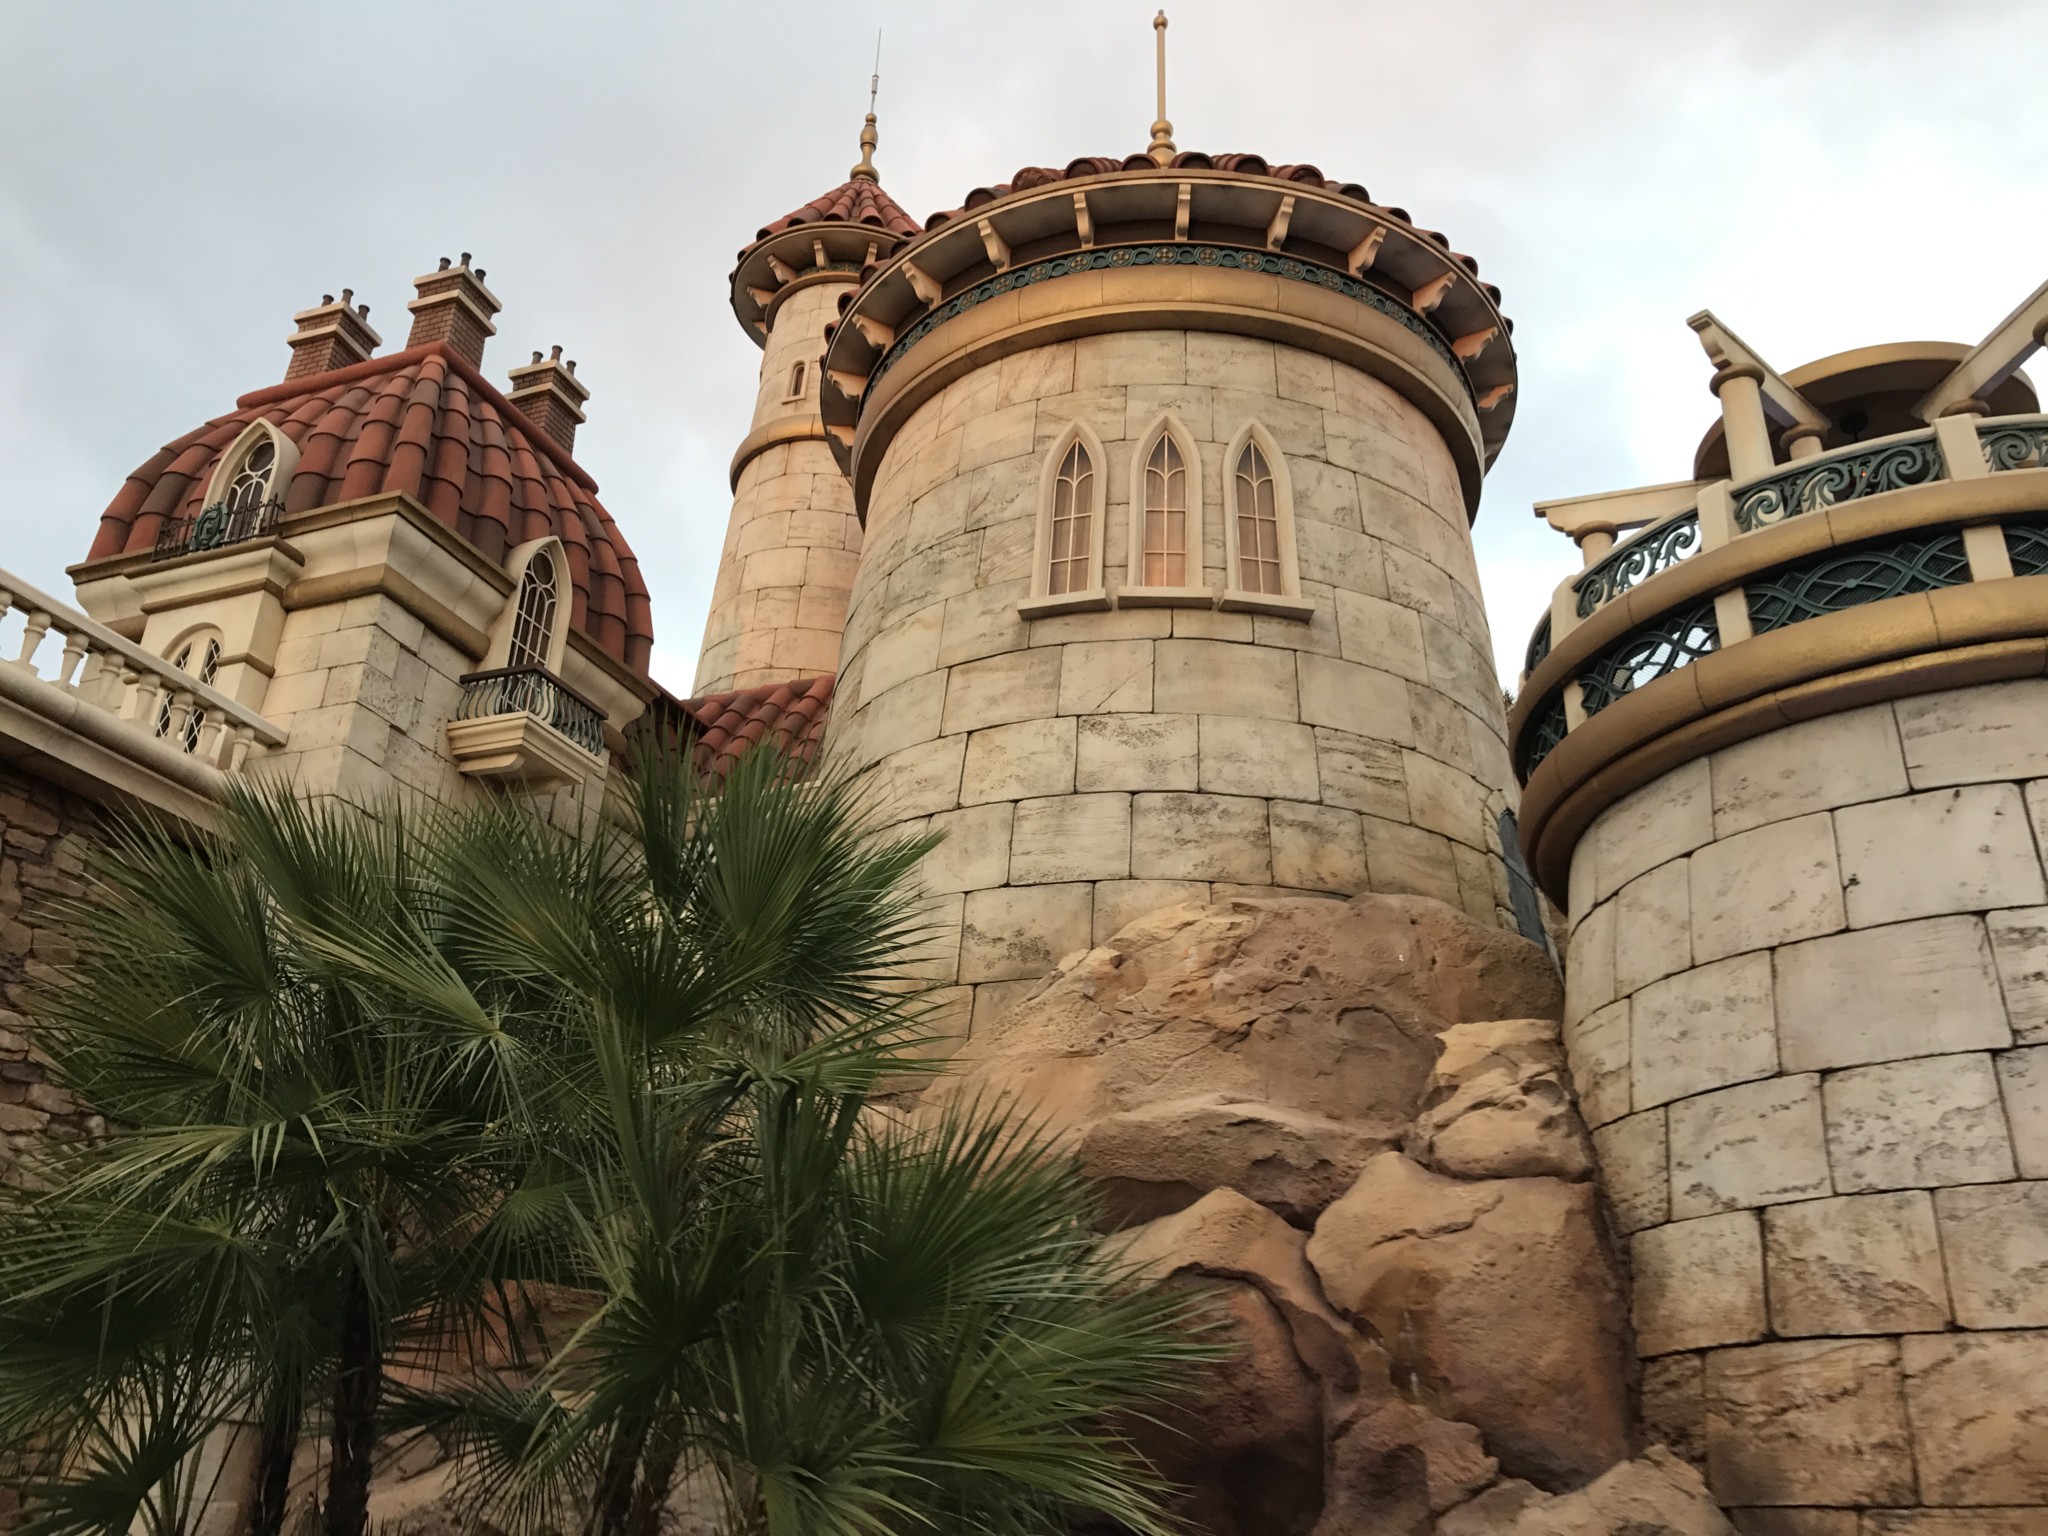 Magic Kingdom For Adults